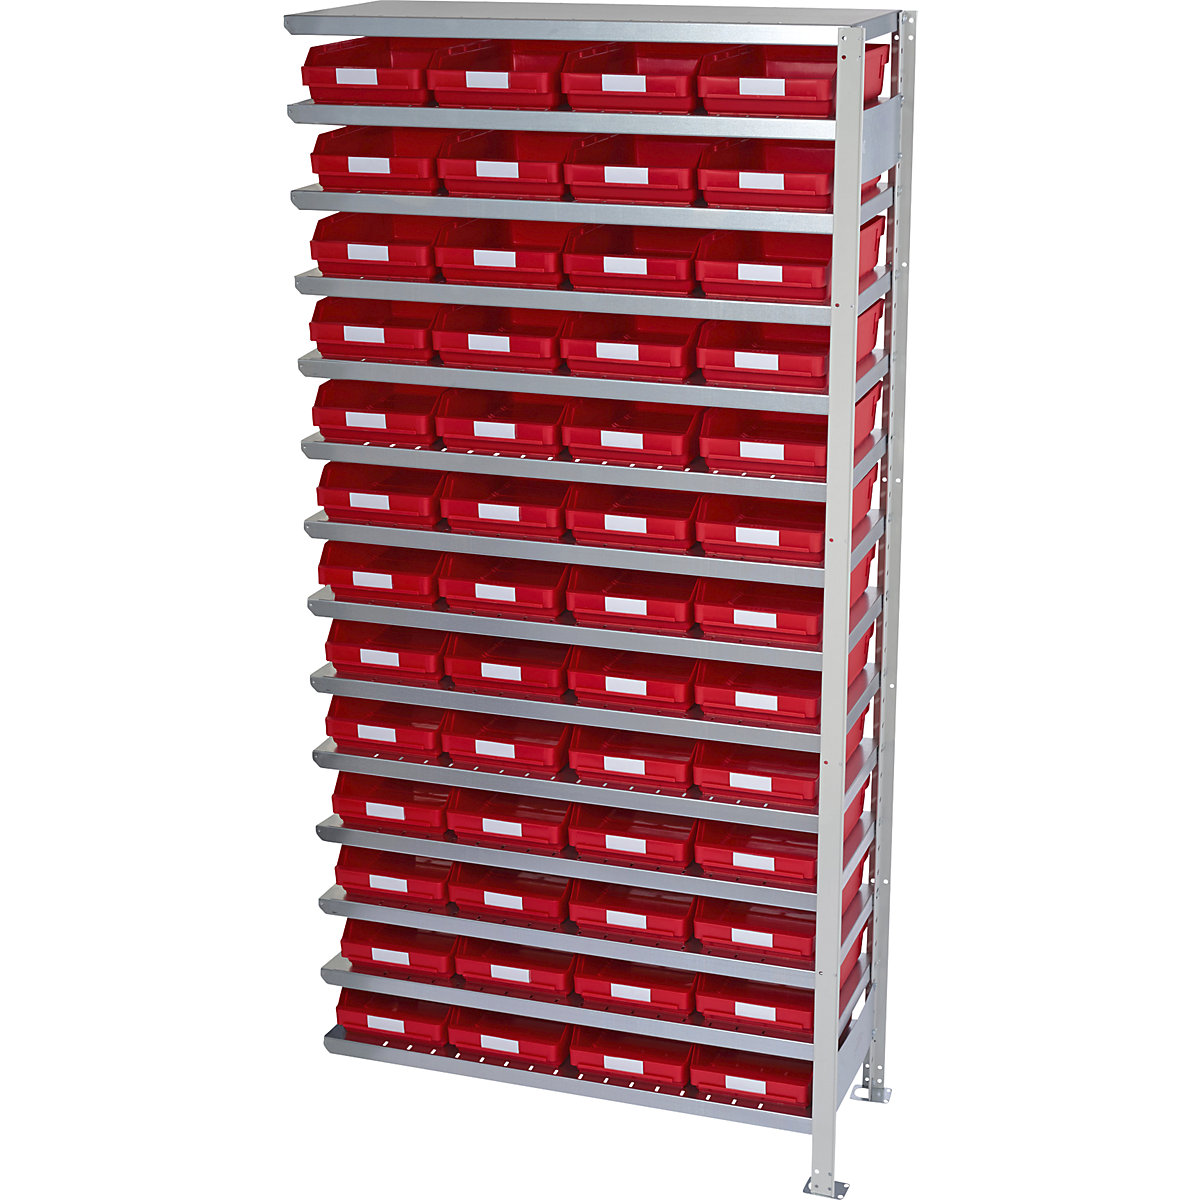 Összedugaszolós állvány dobozokkal – STEMO, állványmagasság 2100 mm, bővítő állvány, 500 mm mély, 52 piros doboz-34